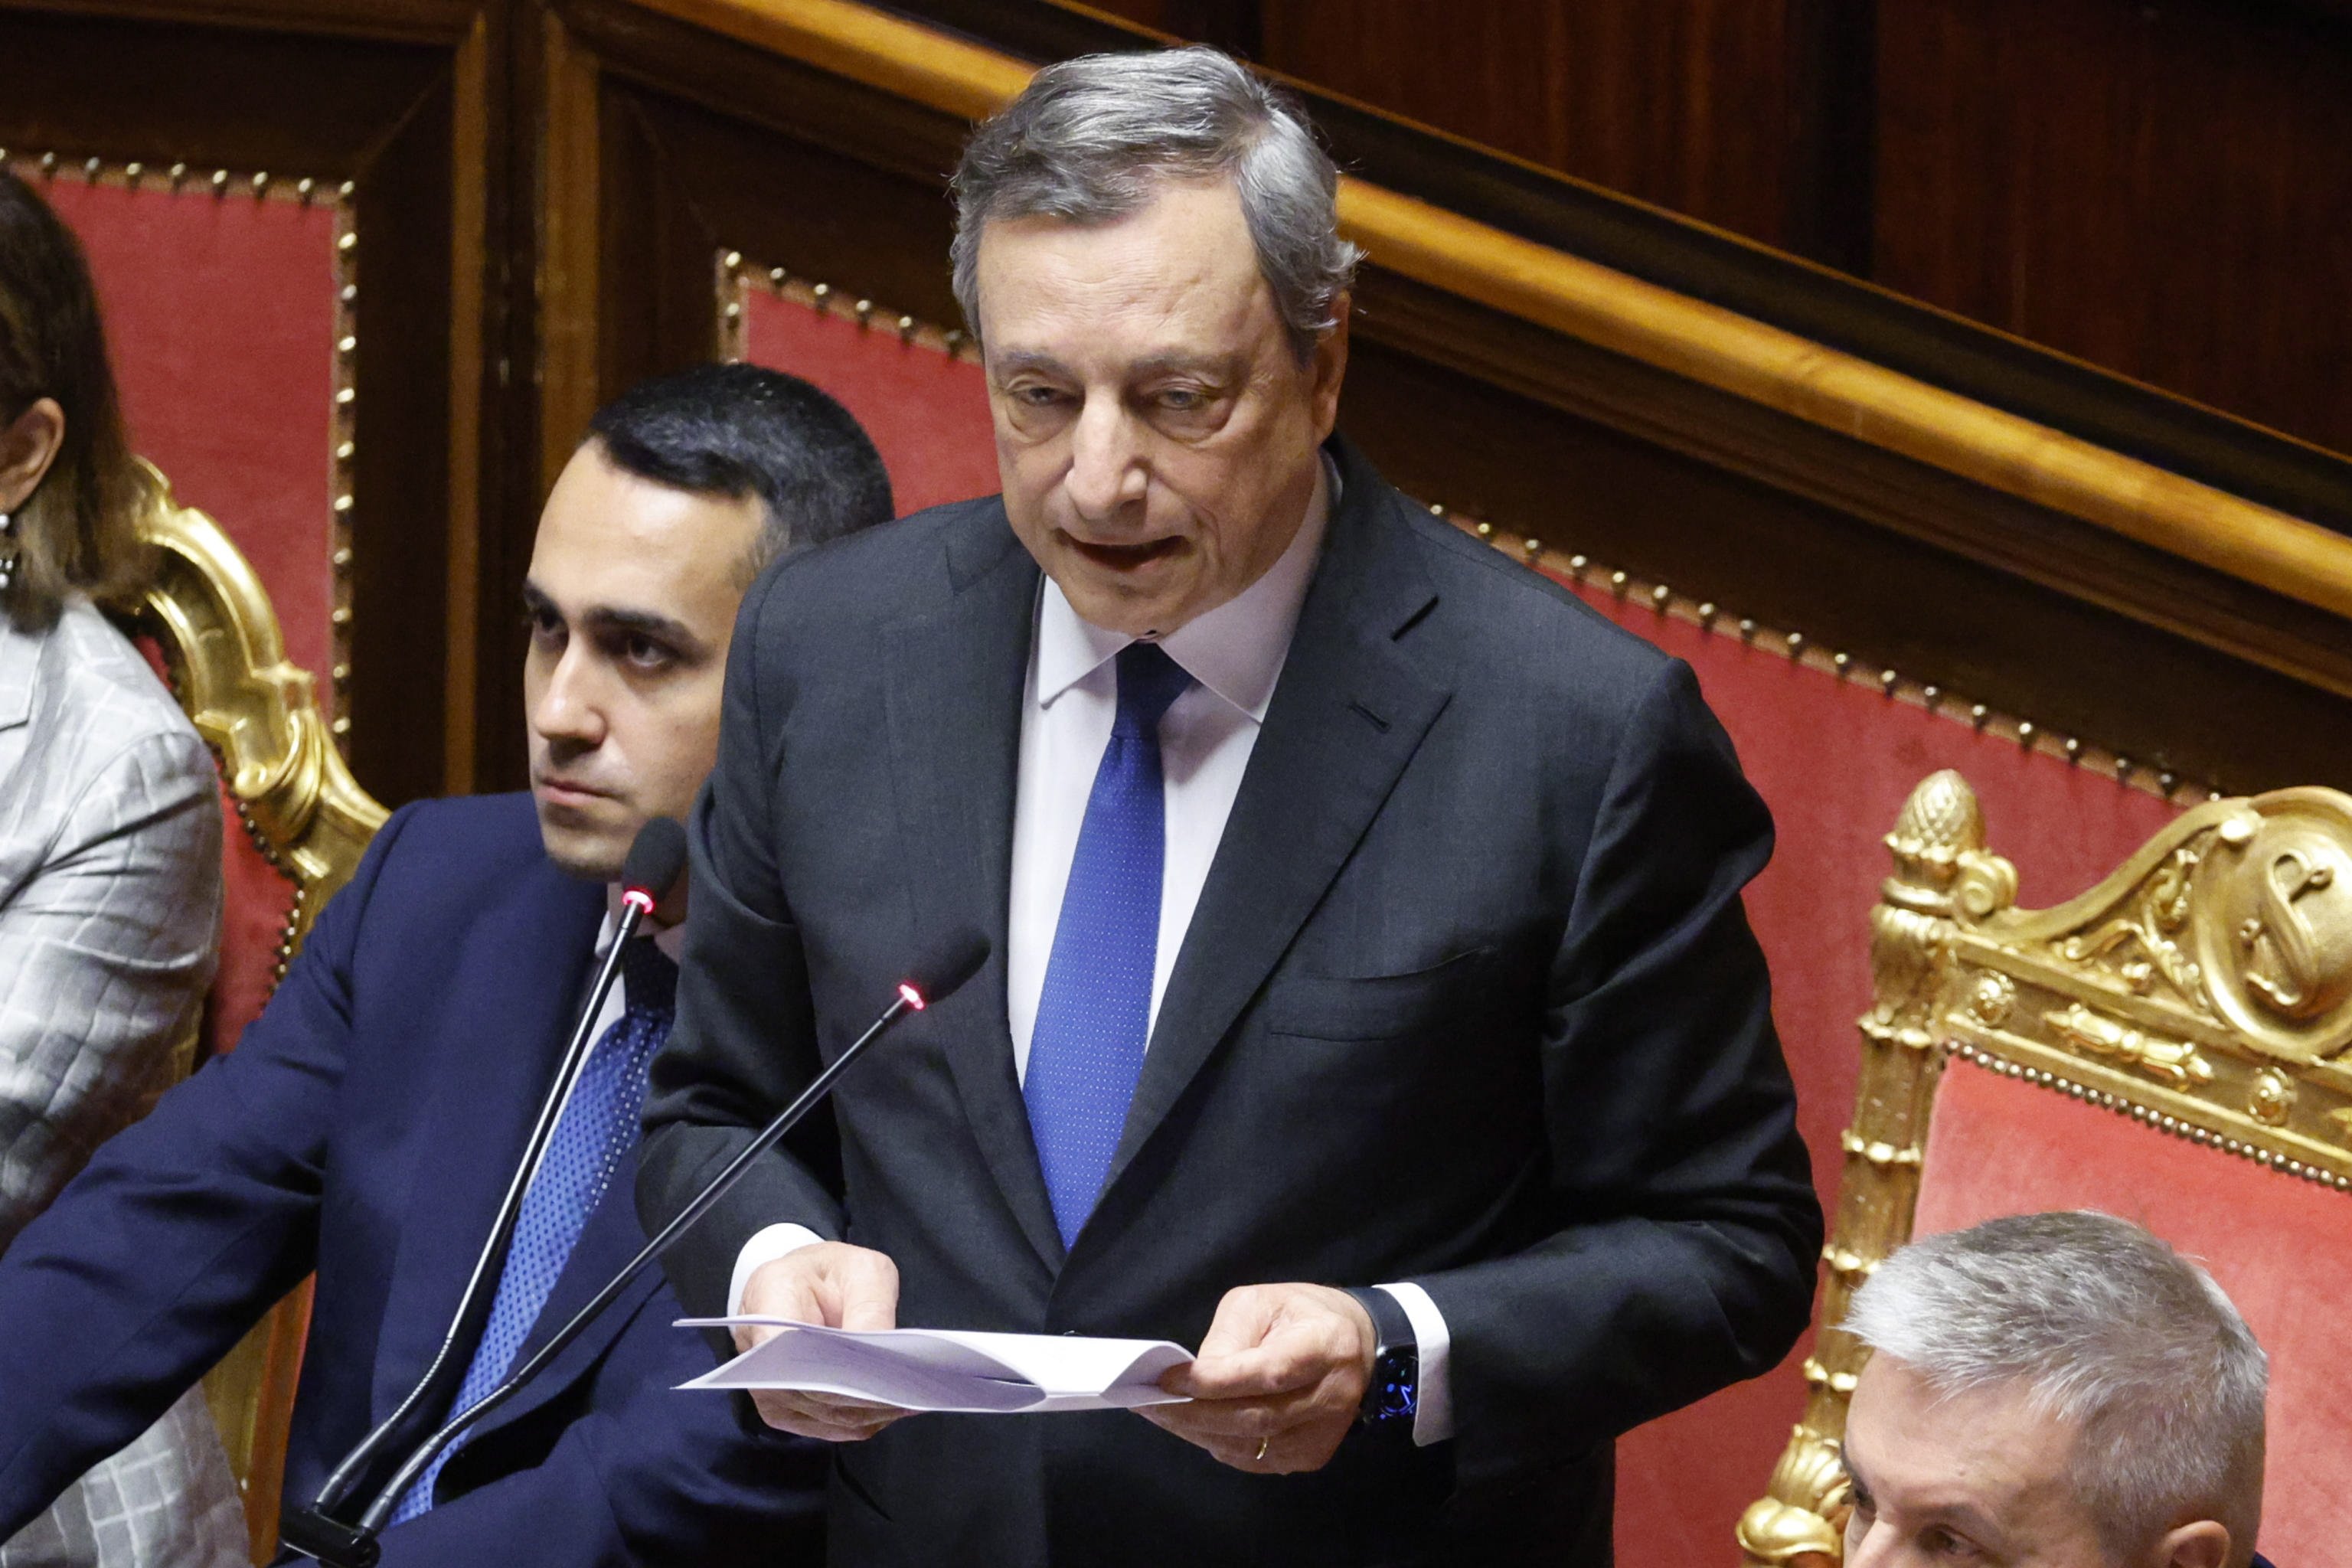 Mario Draghi reconsidera la seva dimissió a l'espera que els partits acceptin el seu programa